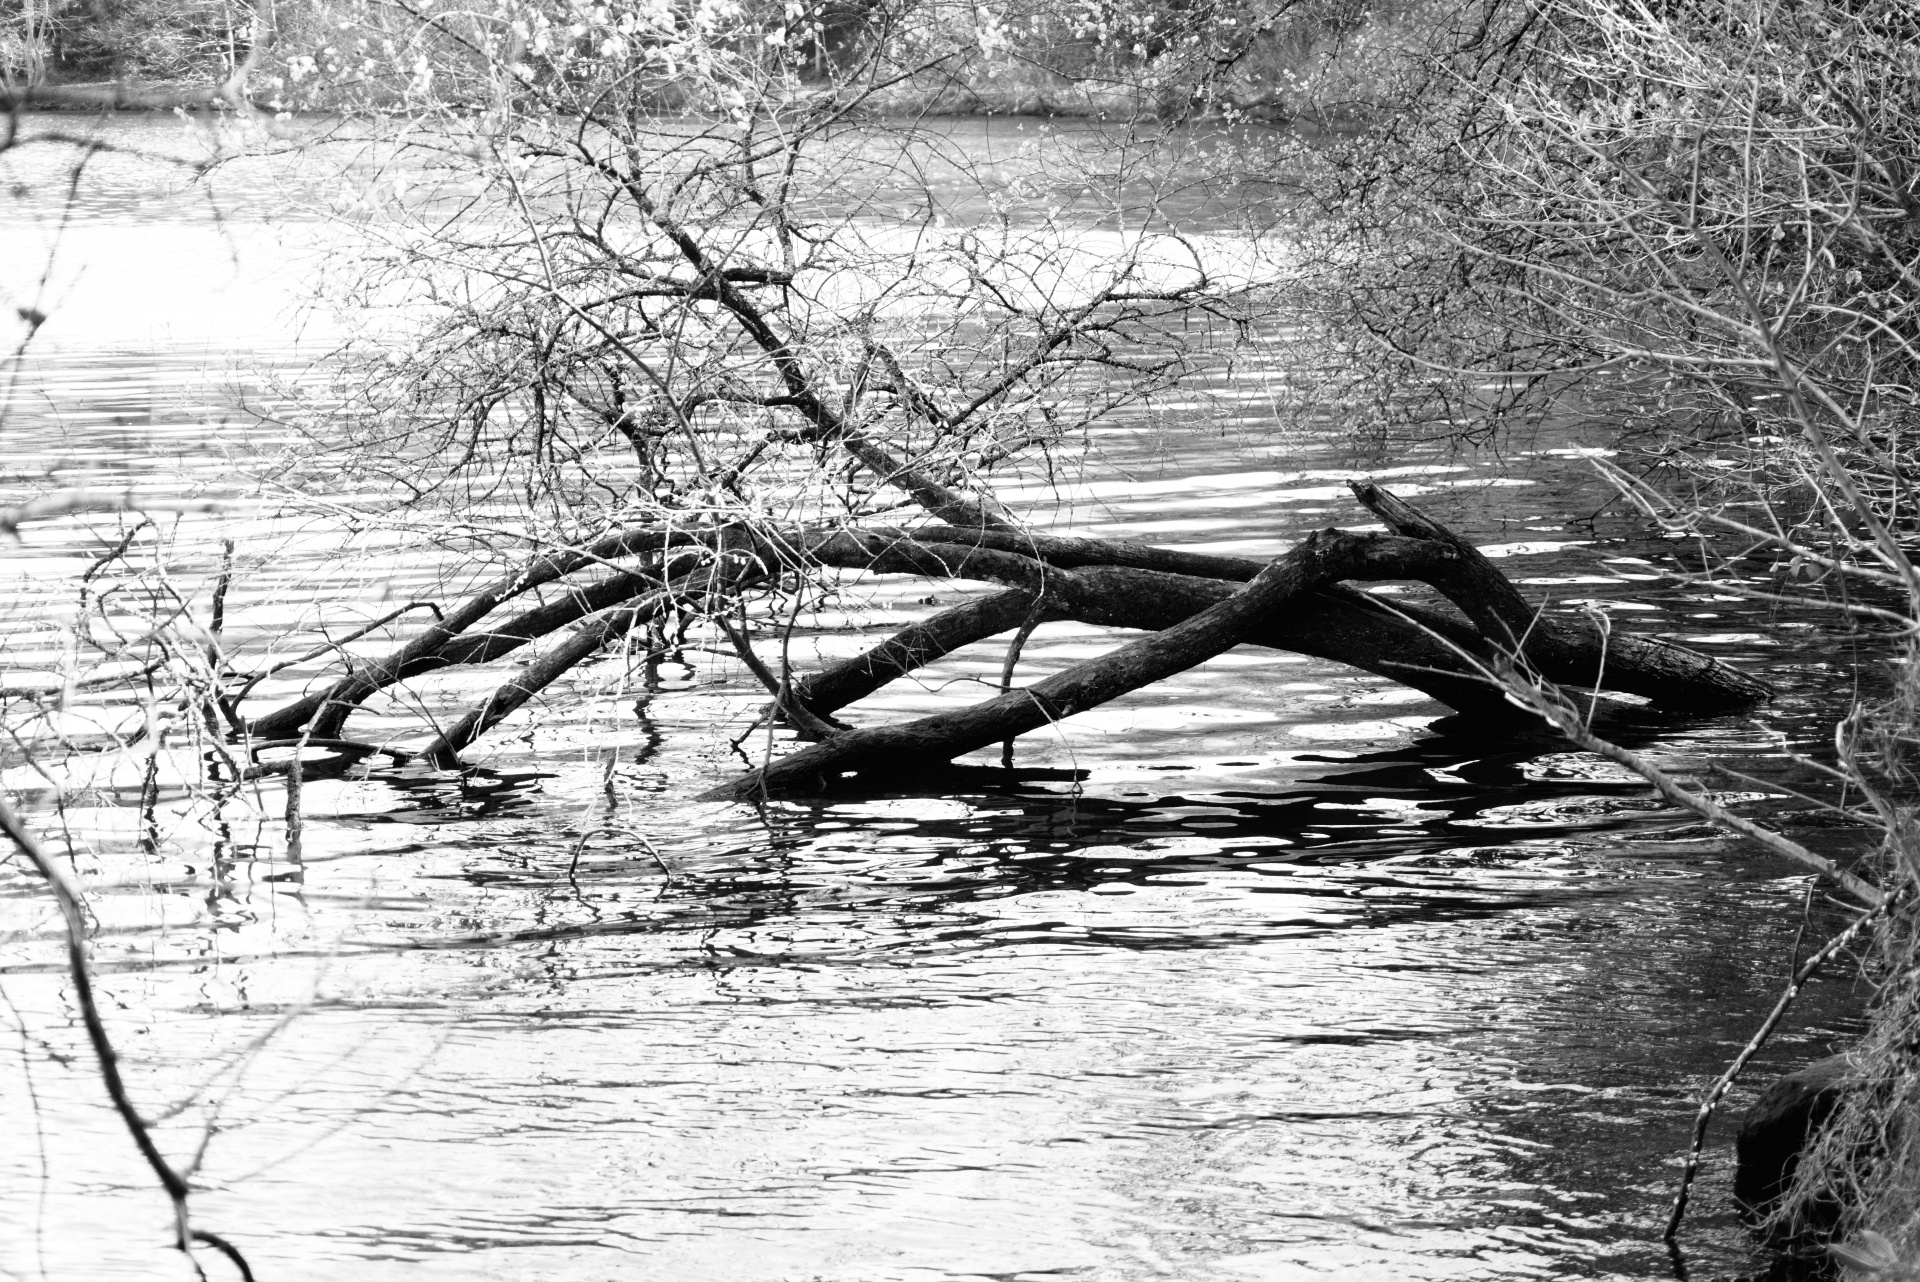 Wilderness, tree fallen in water